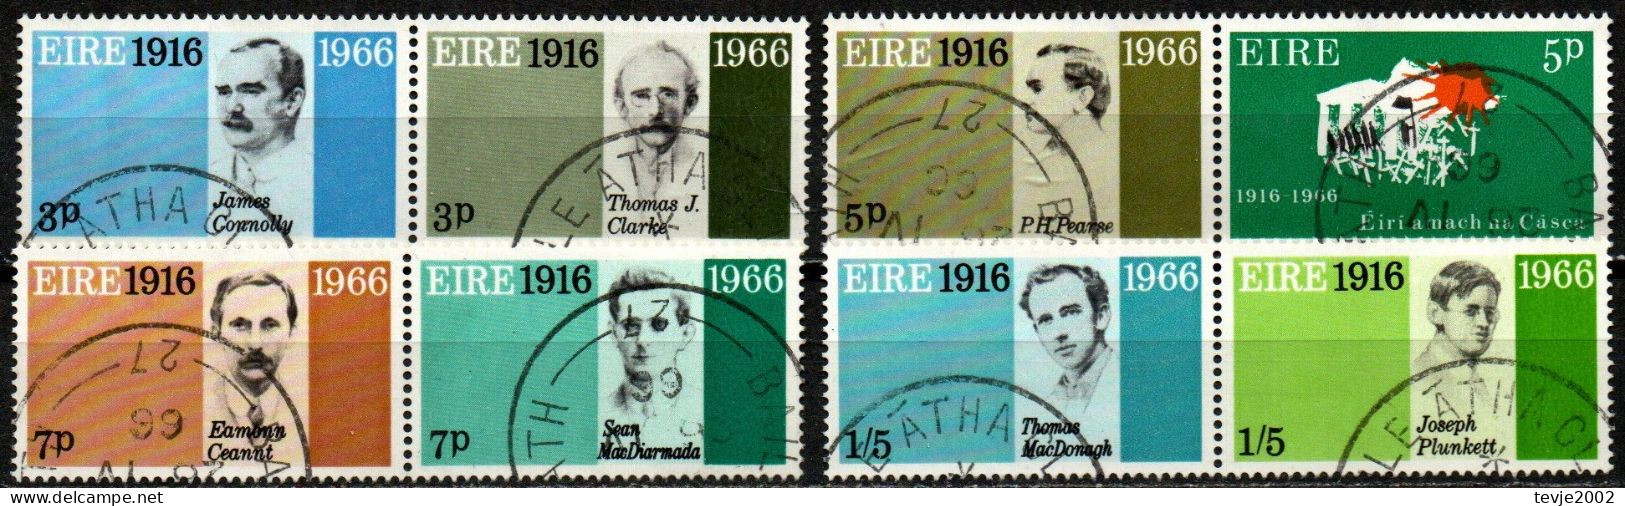 Irland Eire 1966 - Mi.Nr. 178 - 185 - 4 Paare - Gestempelt Used - Used Stamps